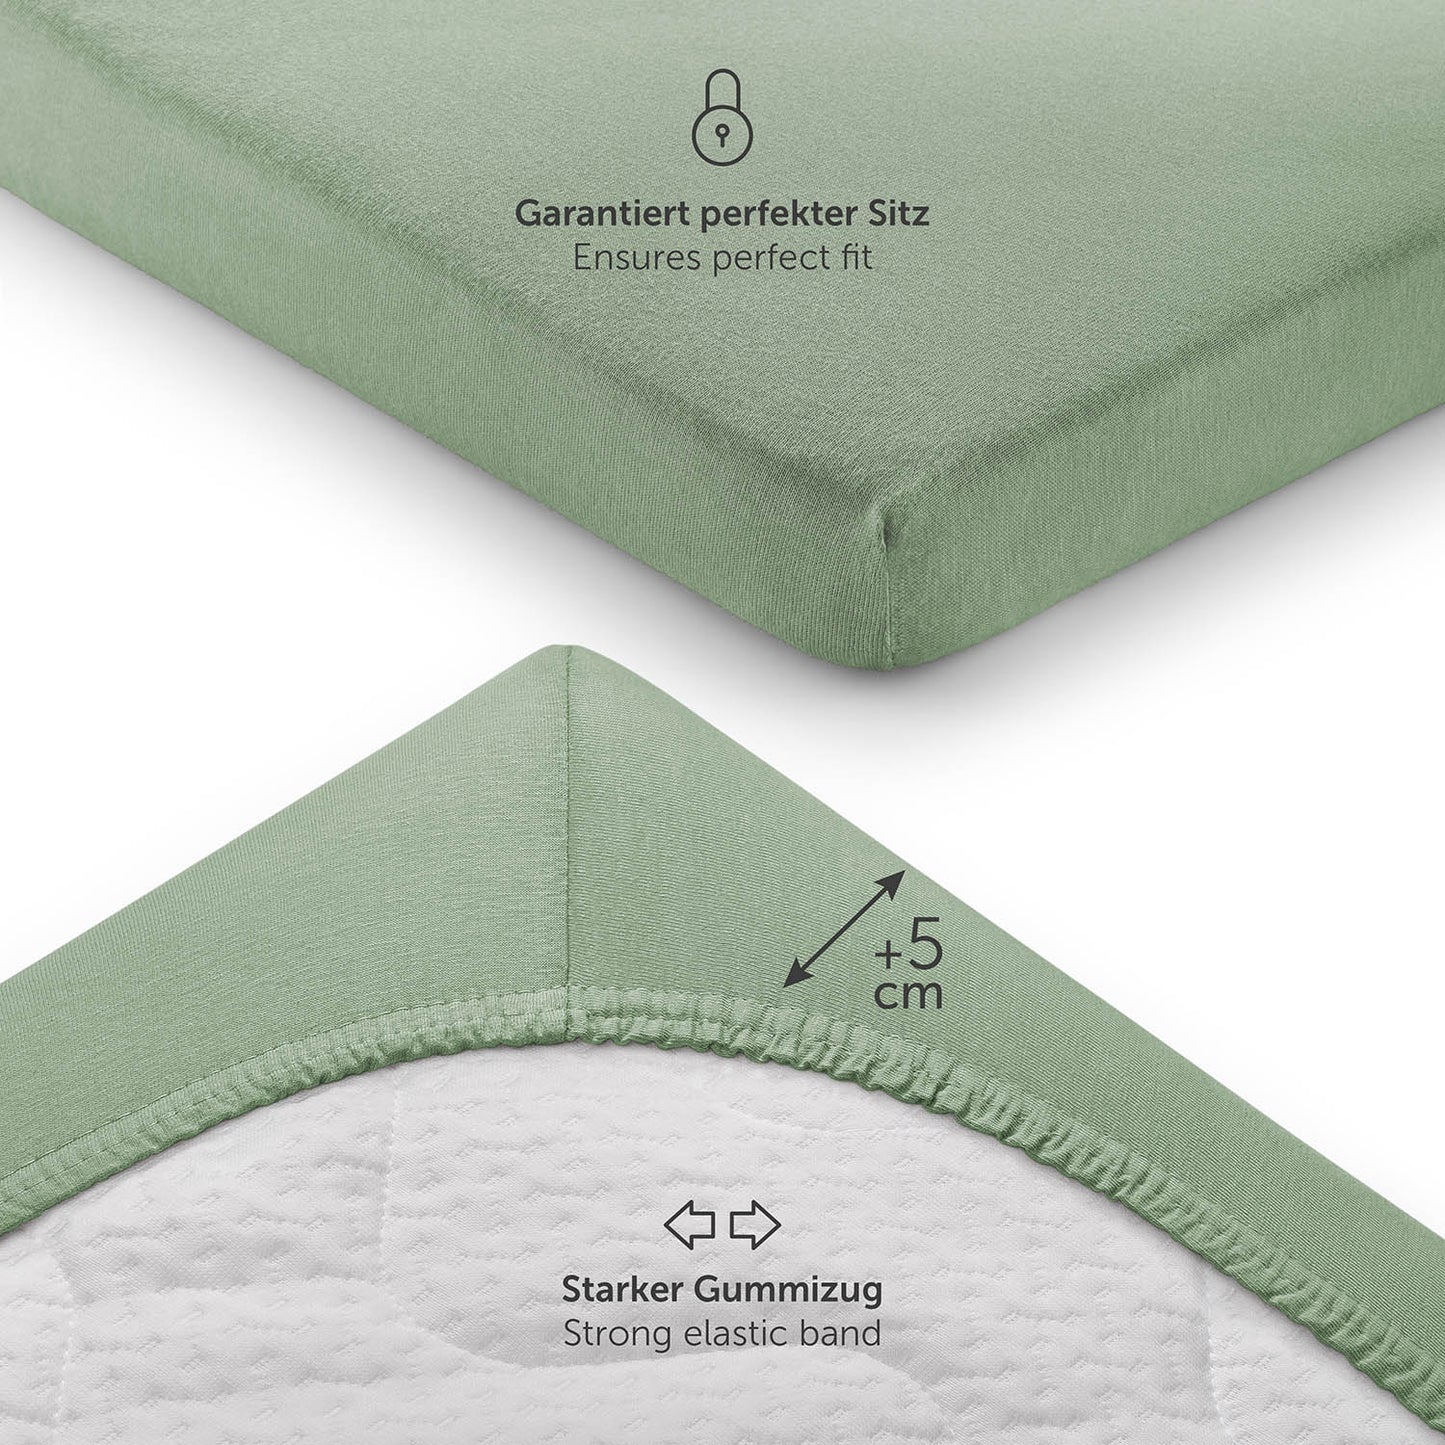 Detailansicht eines grünen Spannbettlakens mit Fokus auf den starken Gummizug und zusätzlichen 5 cm Höhe für perfekten Sitz